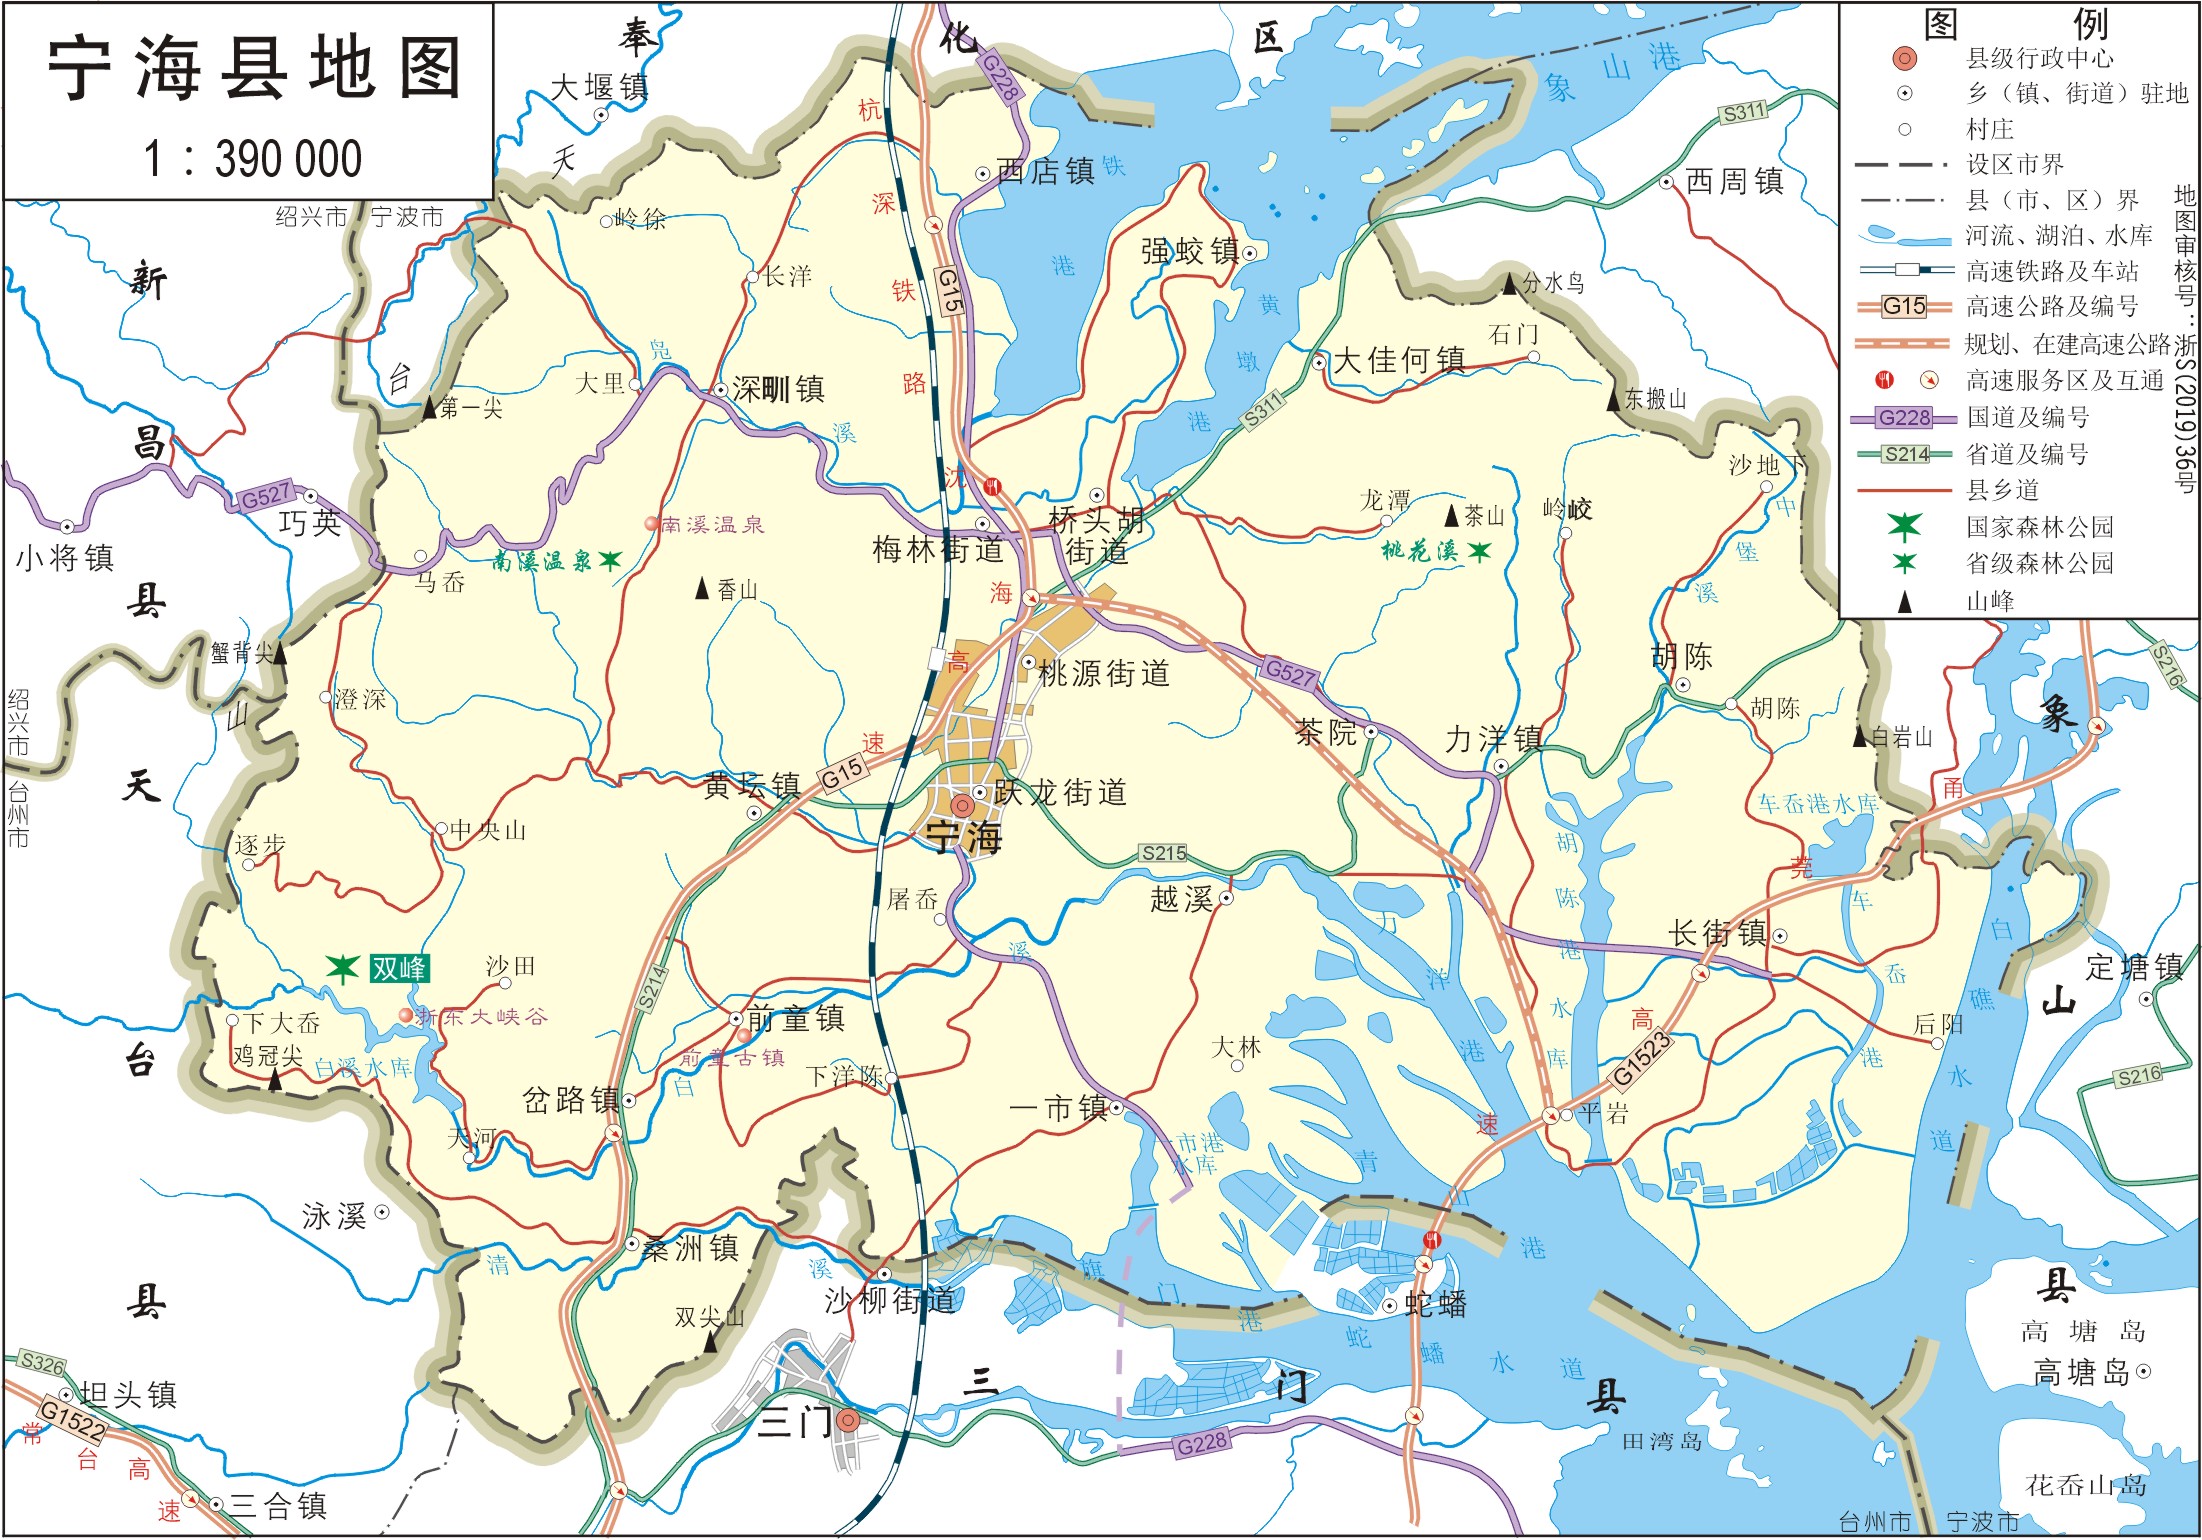 宁波地图(2)|宁波地图(2)全图高清版大图片|旅途风景图片网|www.visacits.com